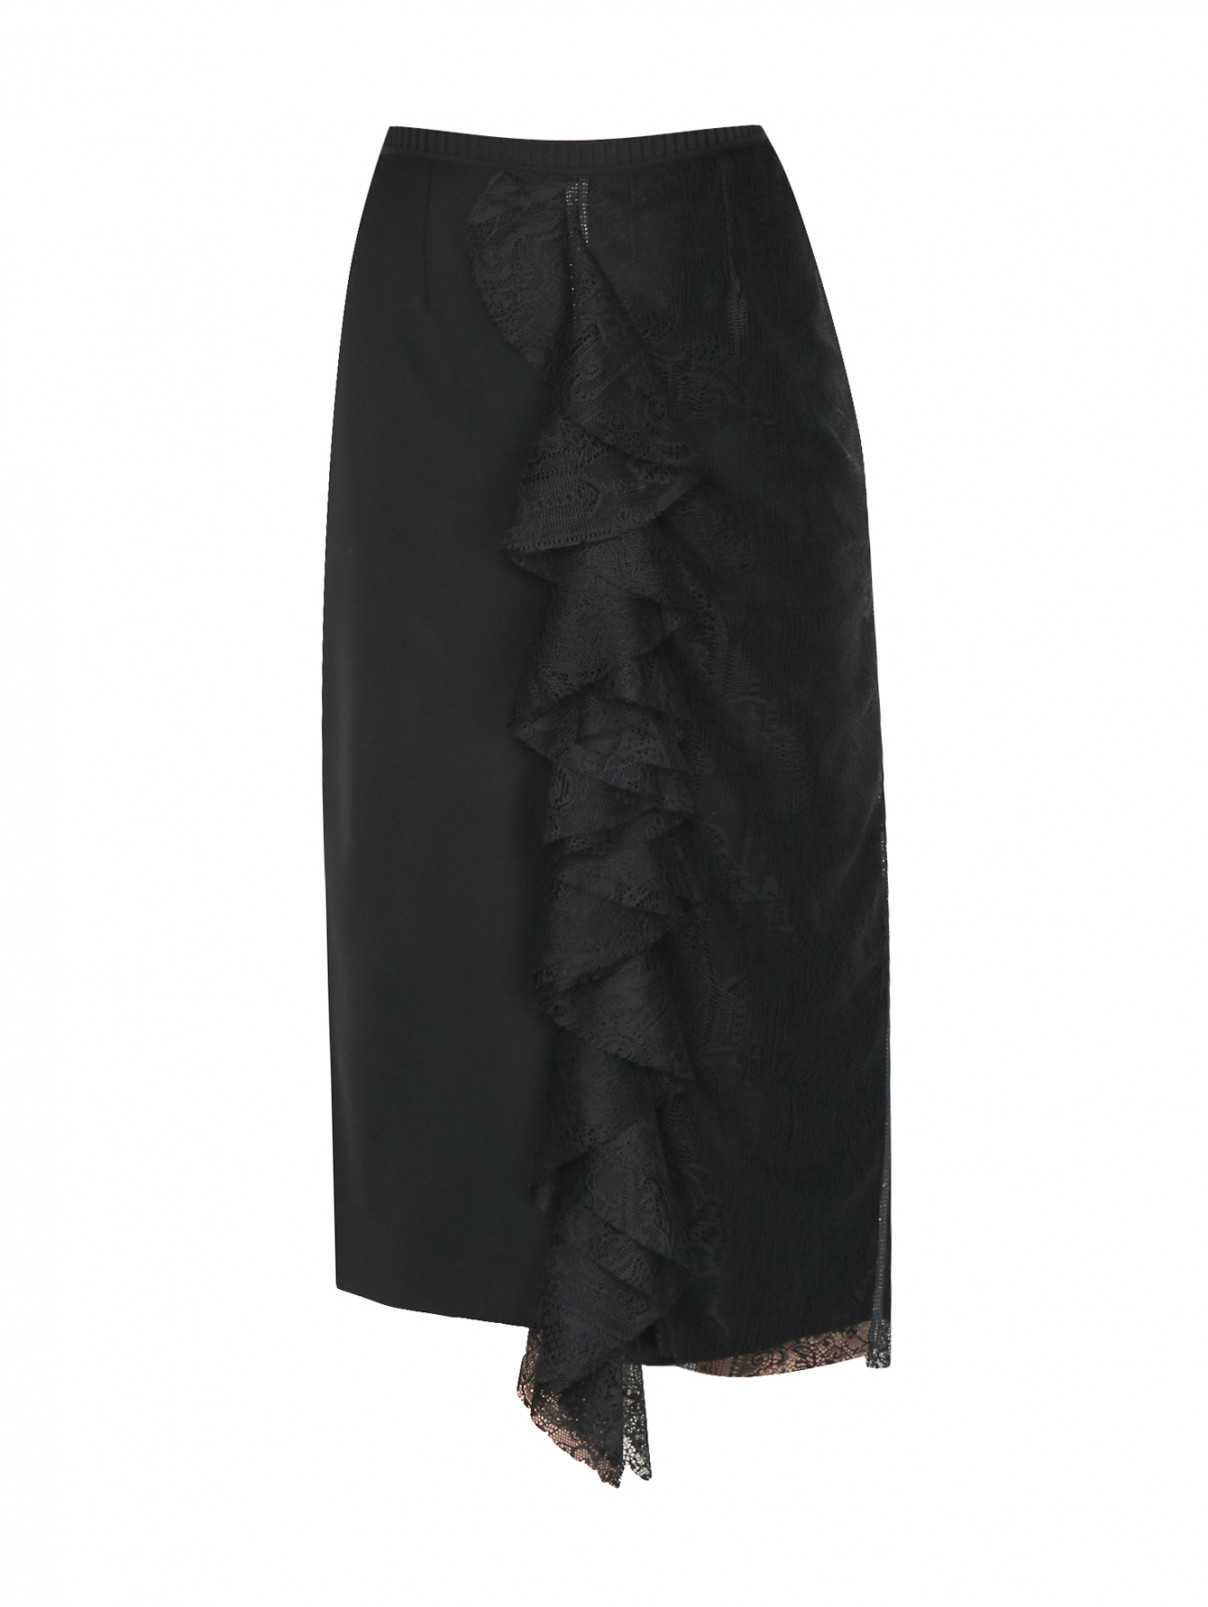 Юбка-миди из смешанной шерсти с кружевной отделкой Antonio Marras  –  Общий вид  – Цвет:  Черный